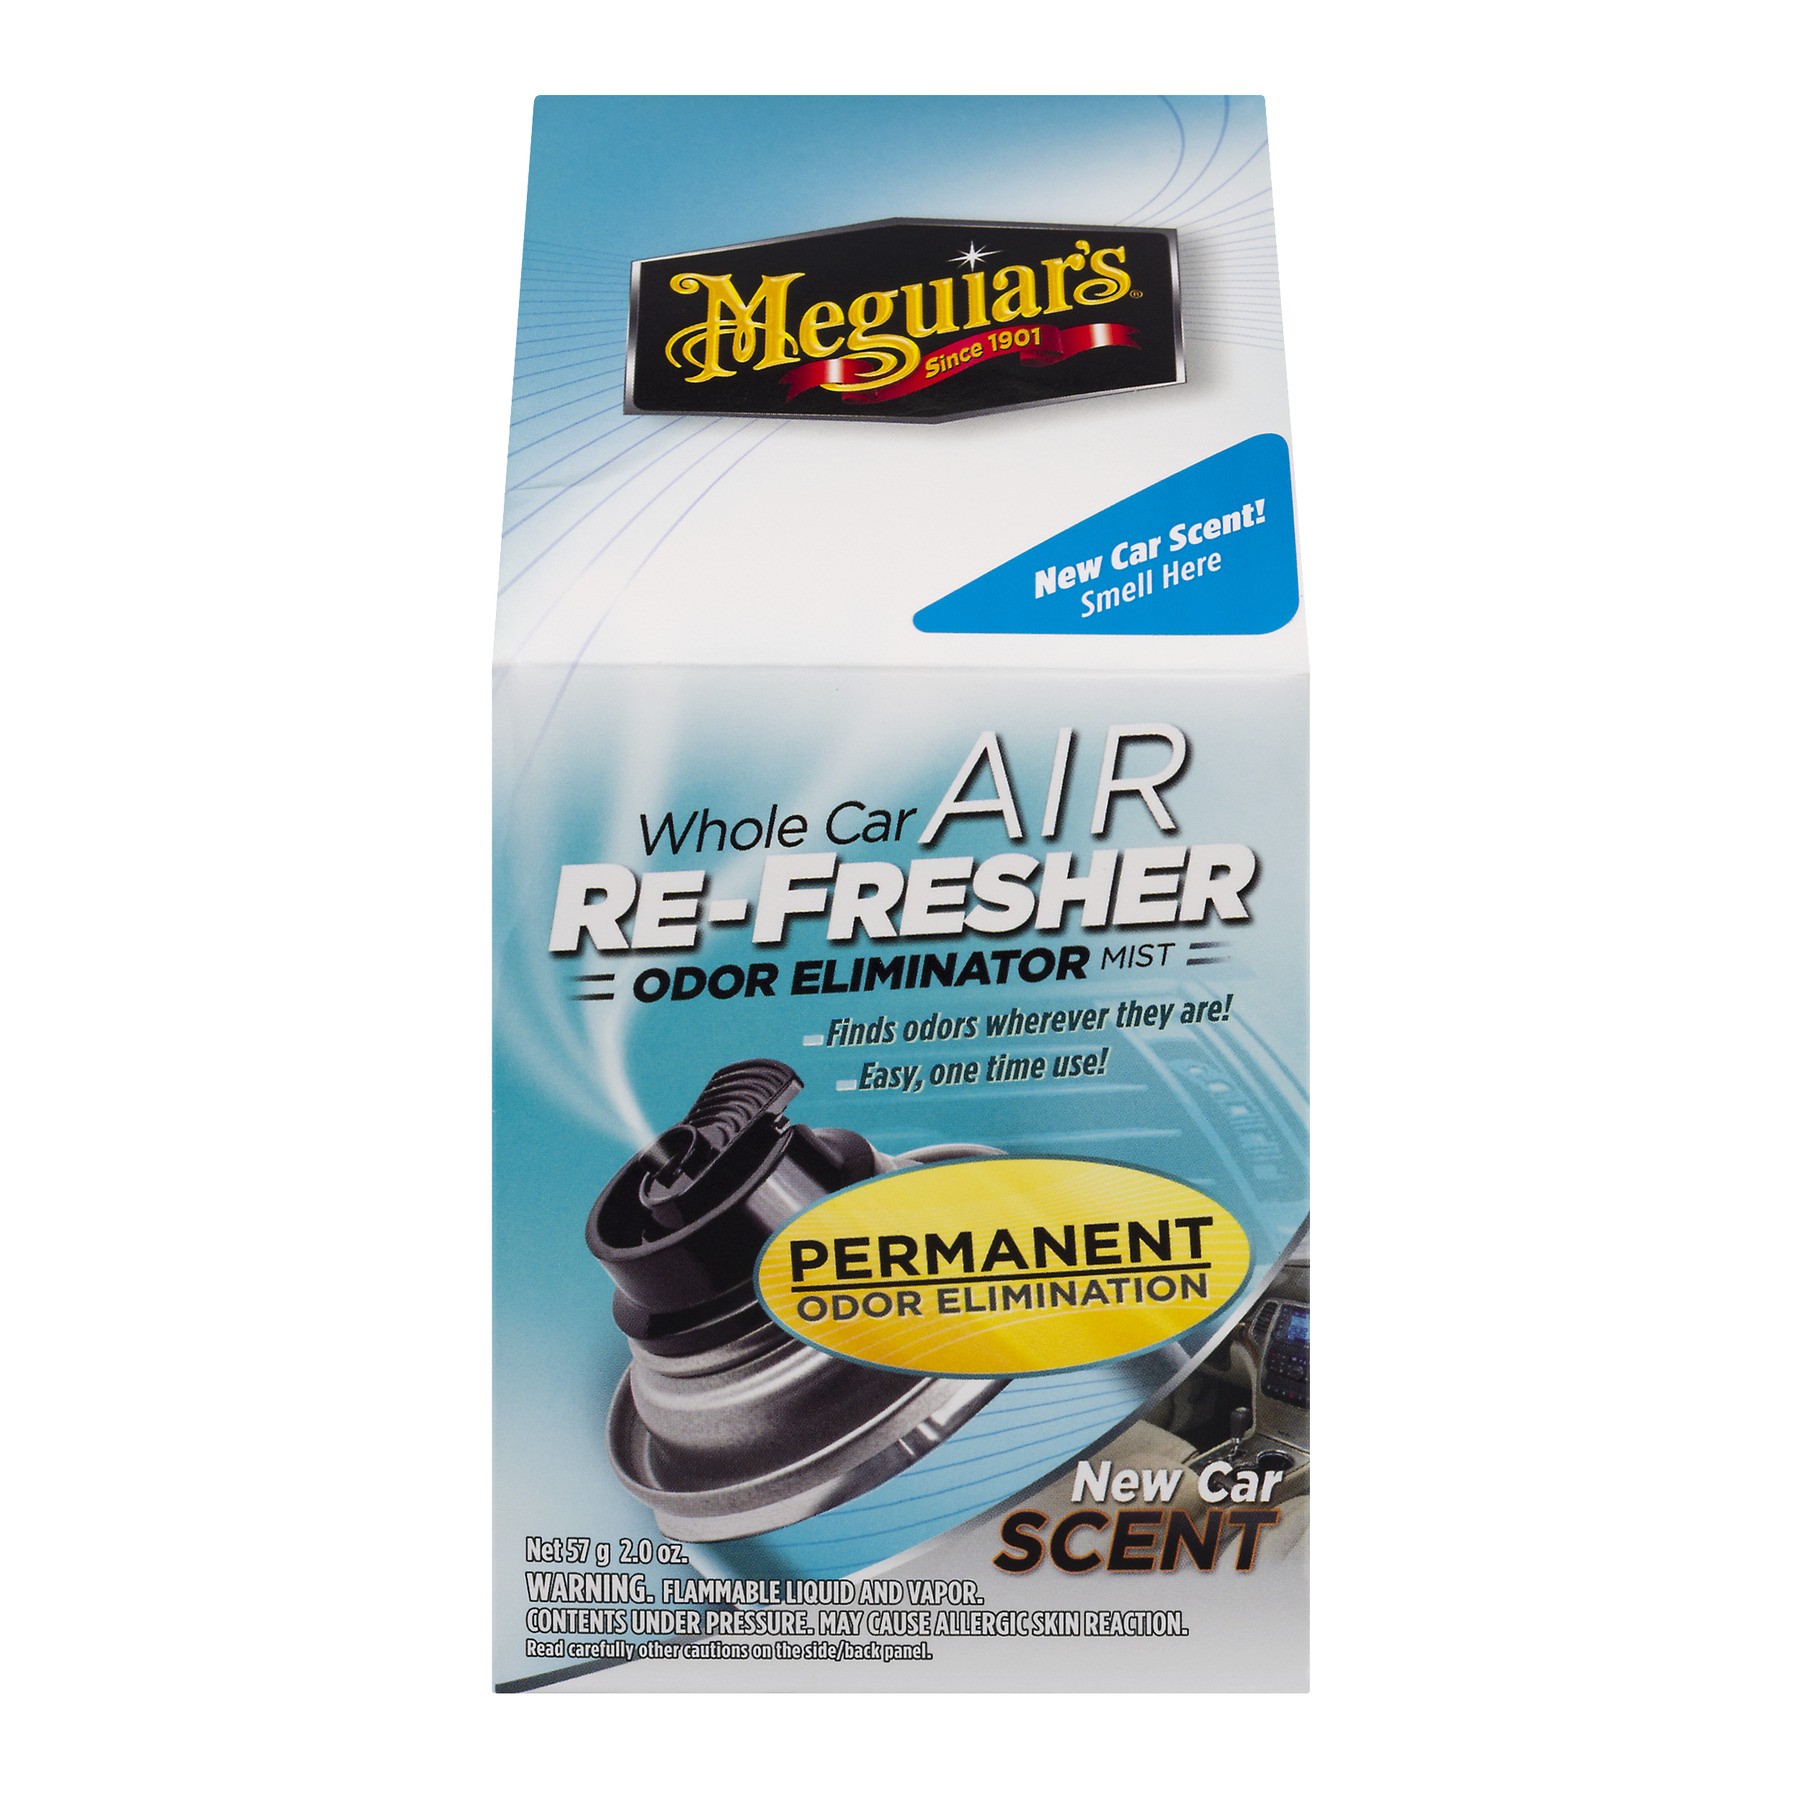 Meguiar's Whole Car Air Re-Fresher Odor Eliminator Mist - New Car